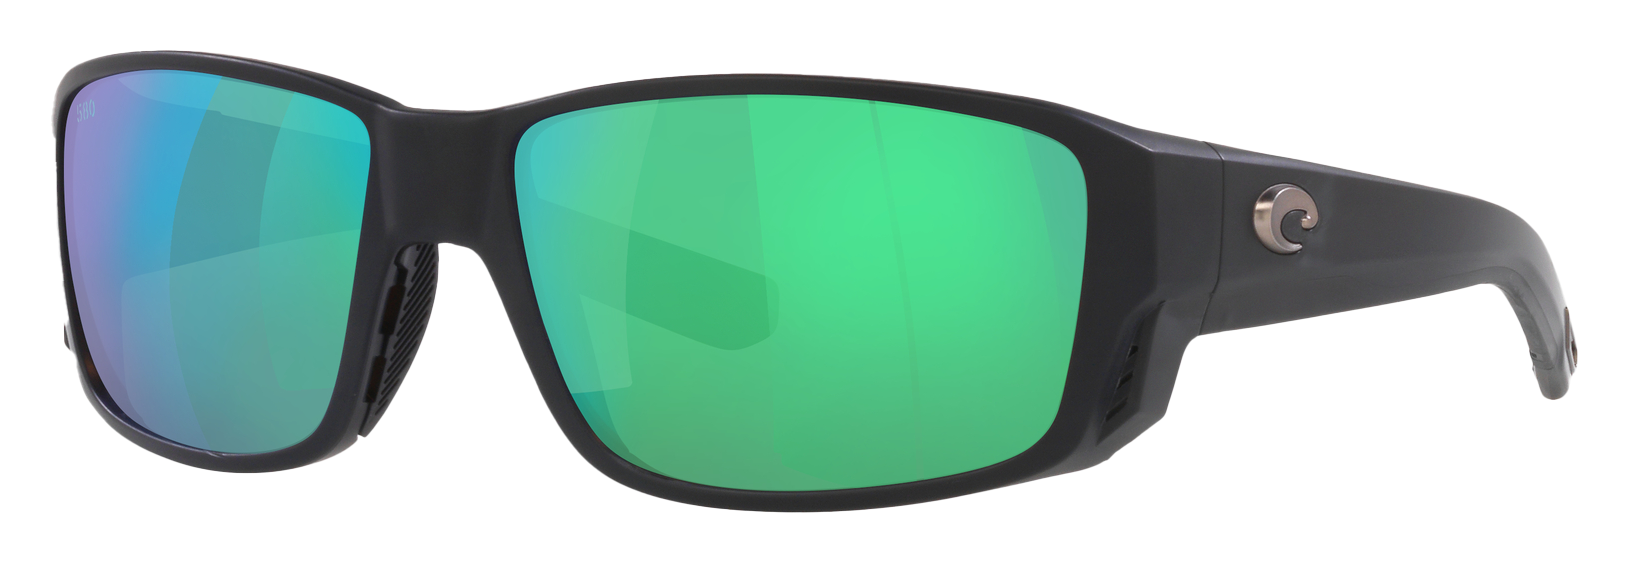 Costa Del Mar Tuna Alley PRO 580G Glass Polarized Sunglasses - Matte Black/Green Mirror - Large